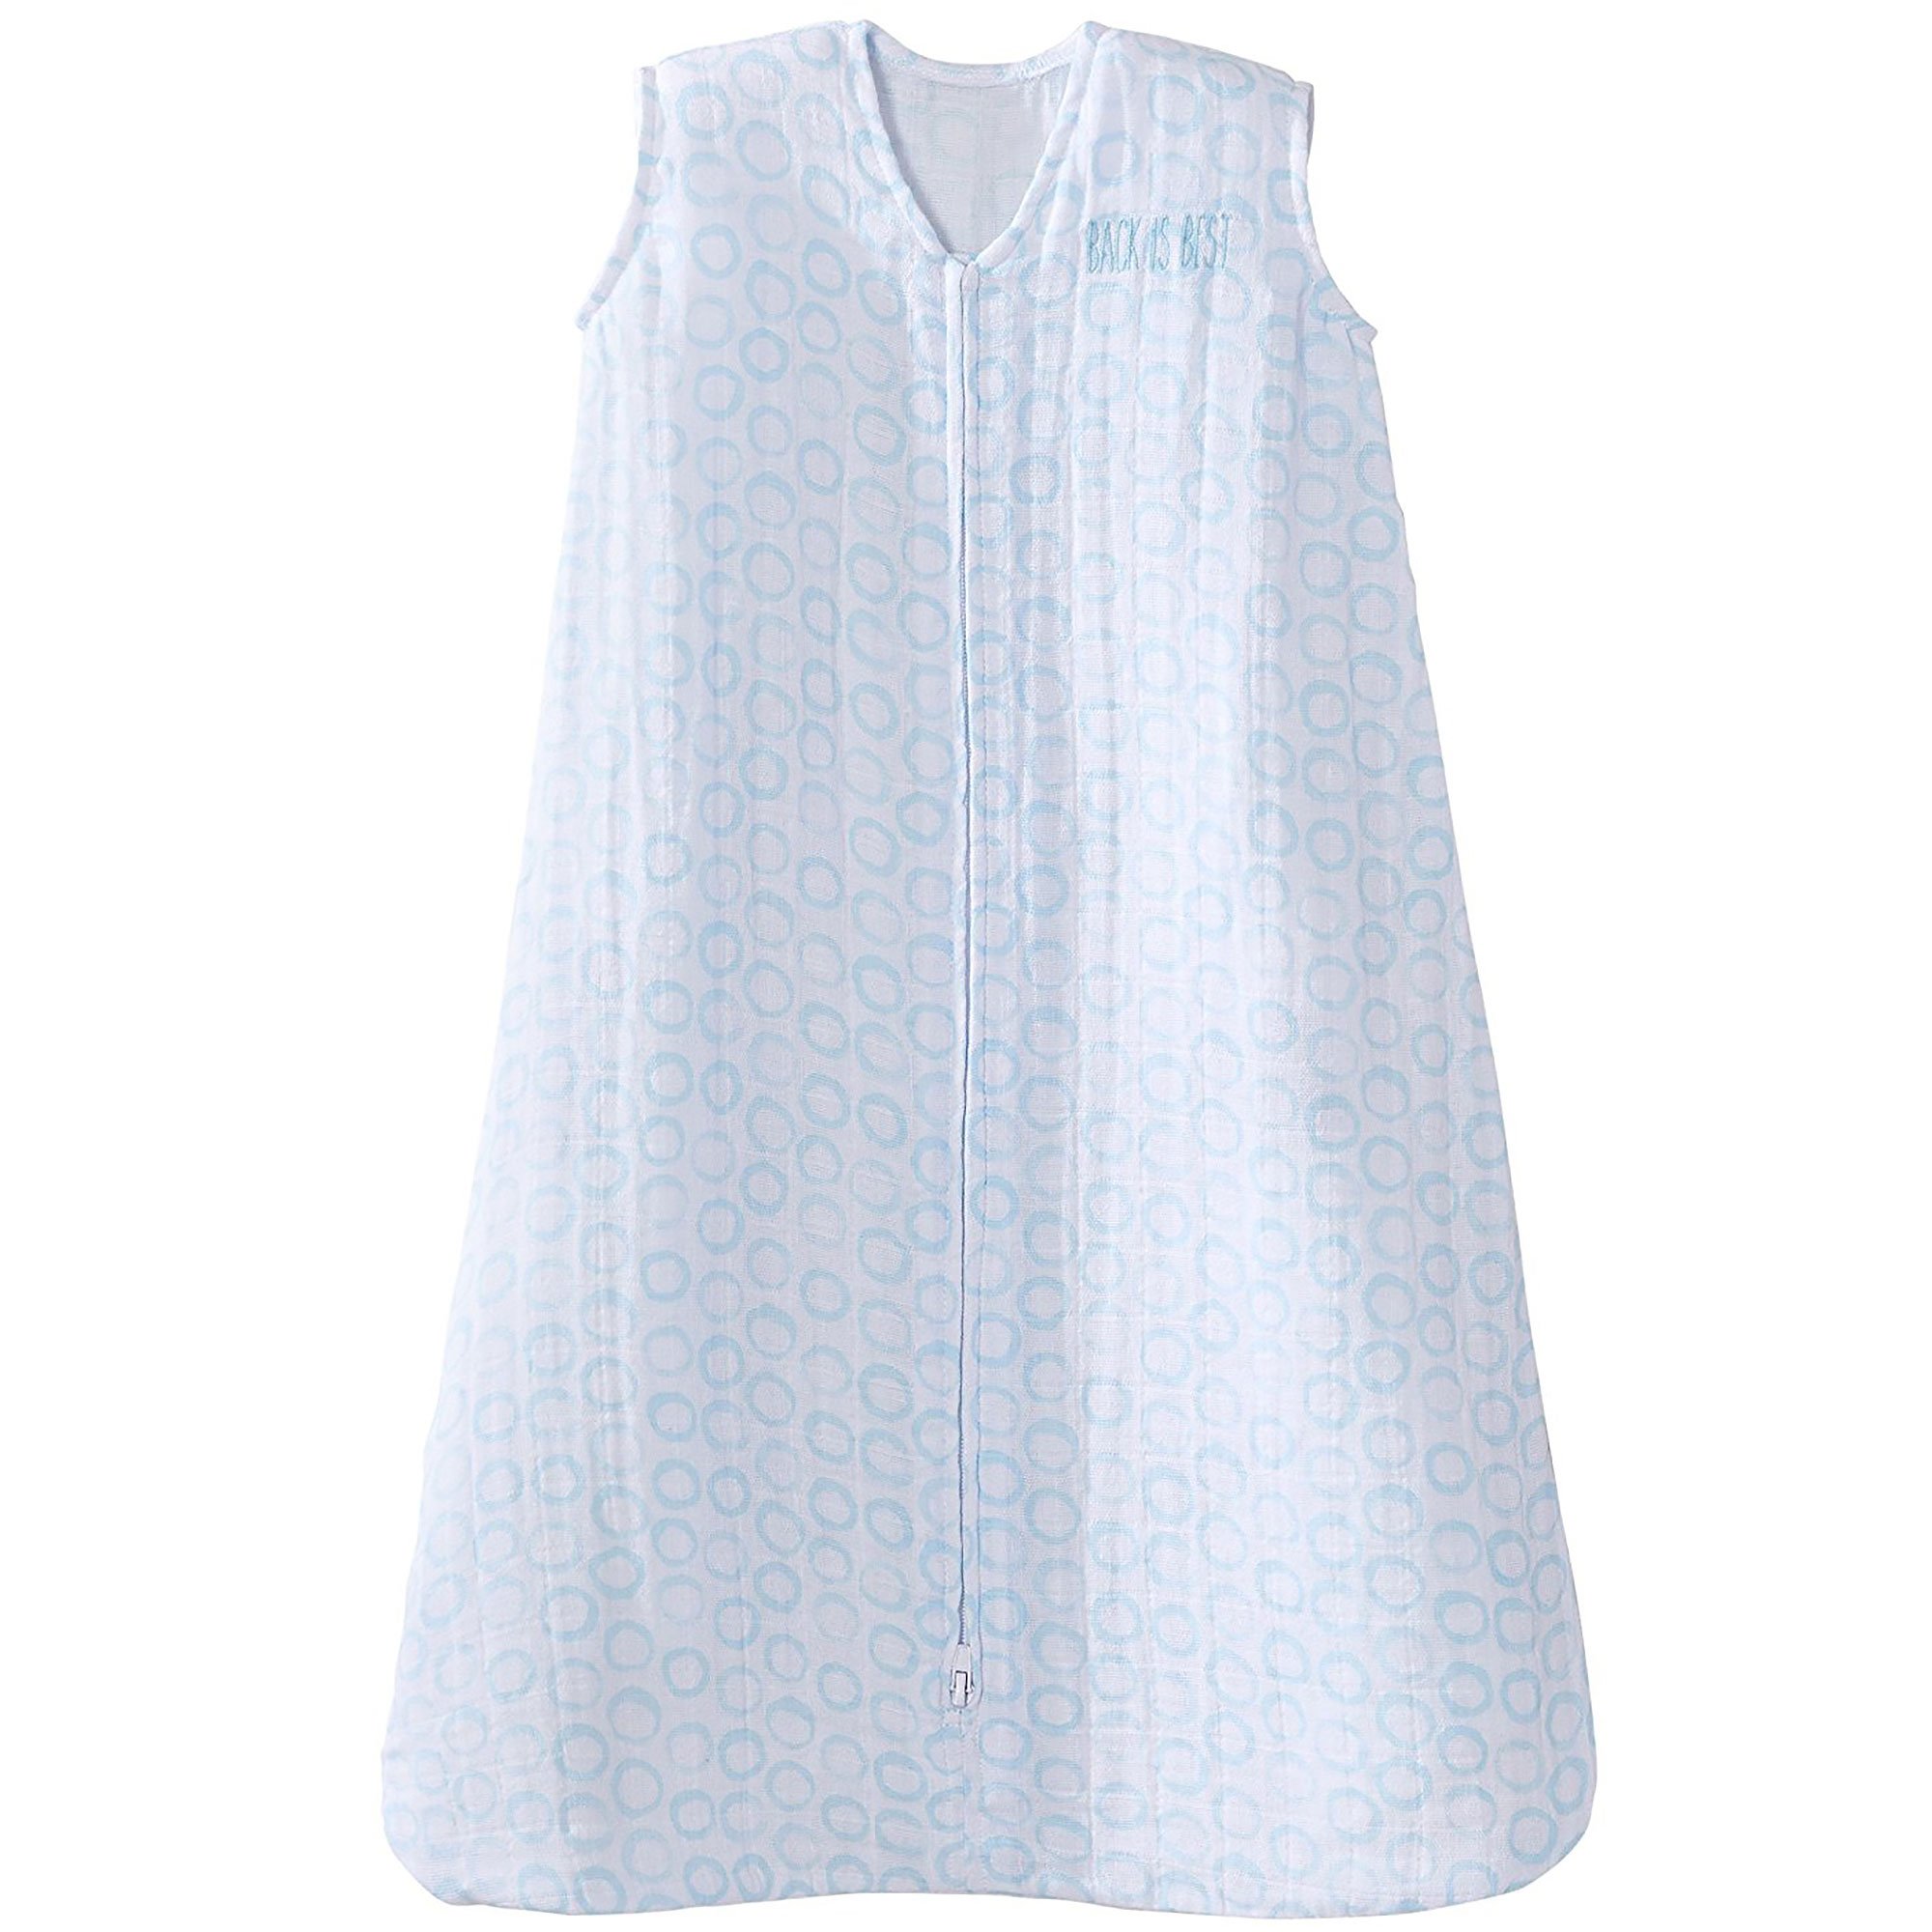 HALO SleepSack, 100% Cotton Wearable Blanket, Swaddle Transition Sleeping Bag, TOG 0.5, Circles Turquoise, Large, 12-18 Months